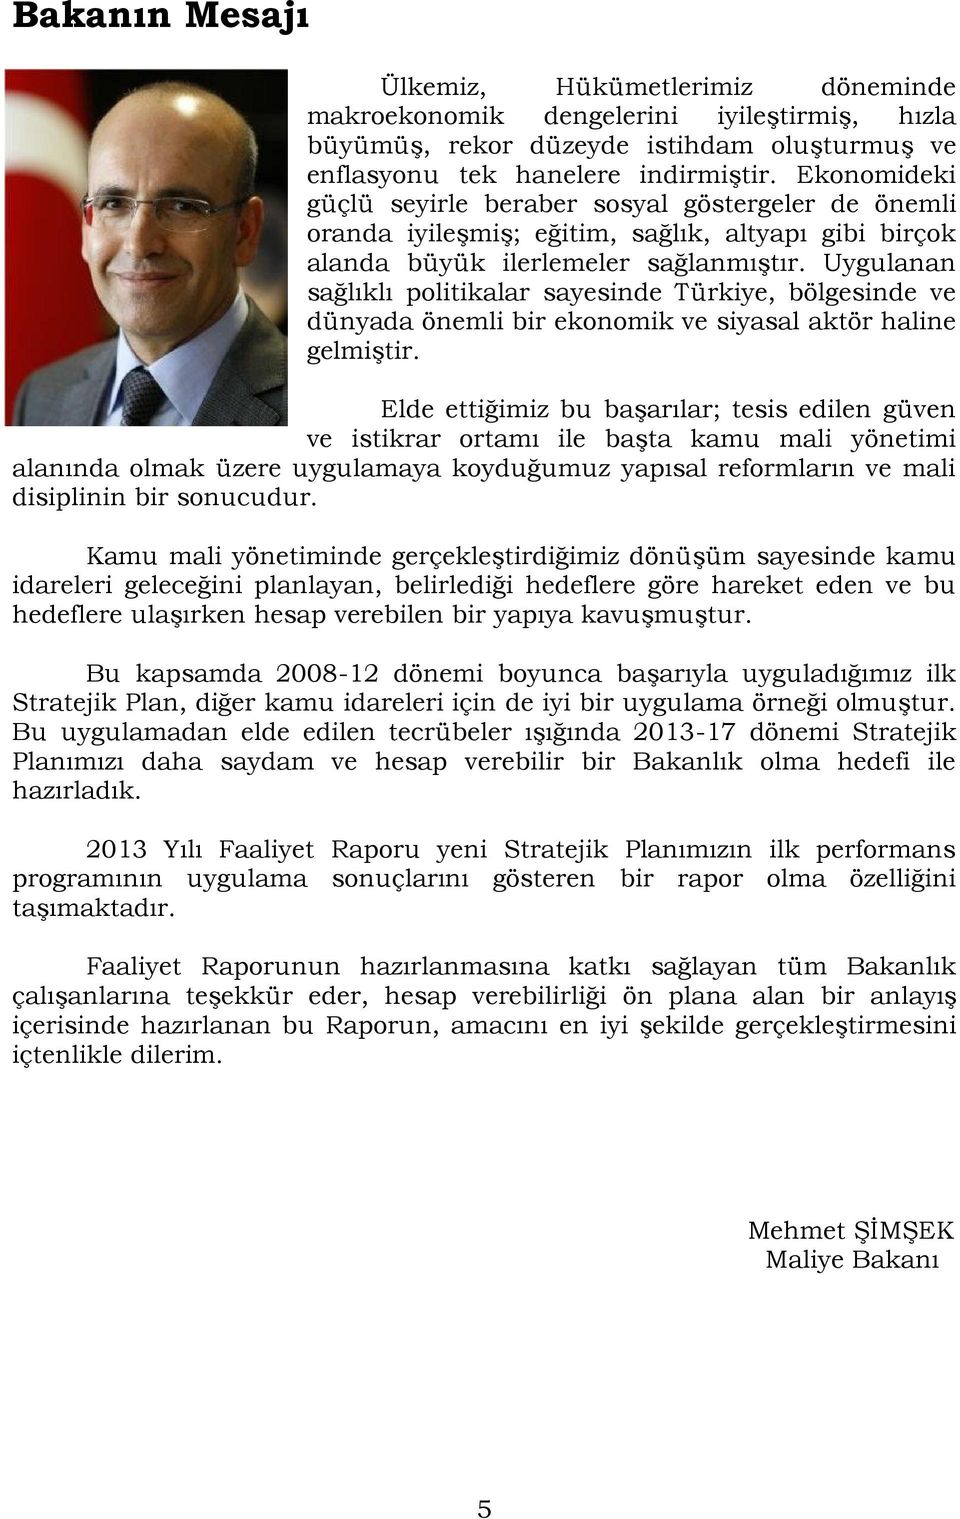 Uygulanan sağlıklı politikalar sayesinde Türkiye, bölgesinde ve dünyada önemli bir ekonomik ve siyasal aktör haline gelmiştir.